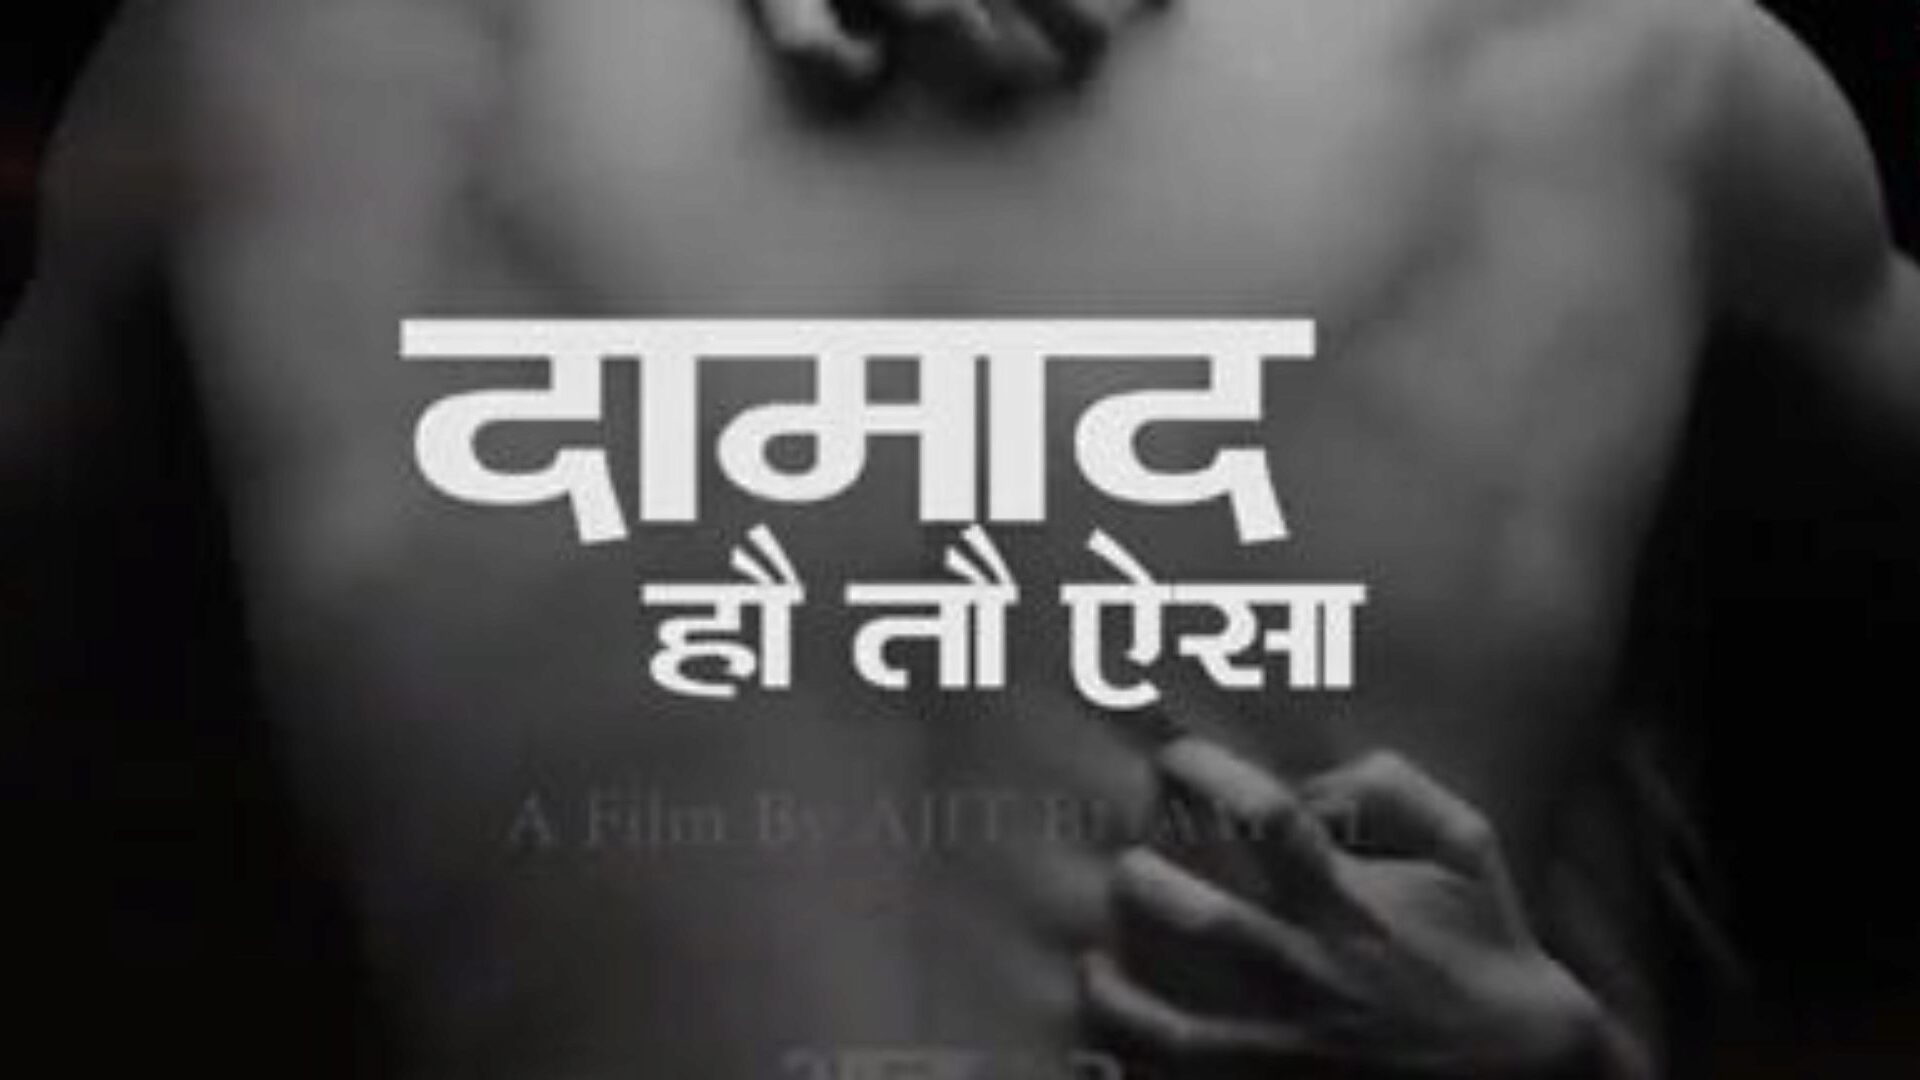 Damad ho to esha part 1, δωρεάν ινδική πορνογραφία 1a: xhamster παρακολουθήστε damad ho to esha part 1 ταινία στο xhamster, ο τεράστιος ιστότοπος του αγαπημένου σωλήνα με πολλούς δωρεάν ινδικές ταινίες 1 & Tube 1 porno